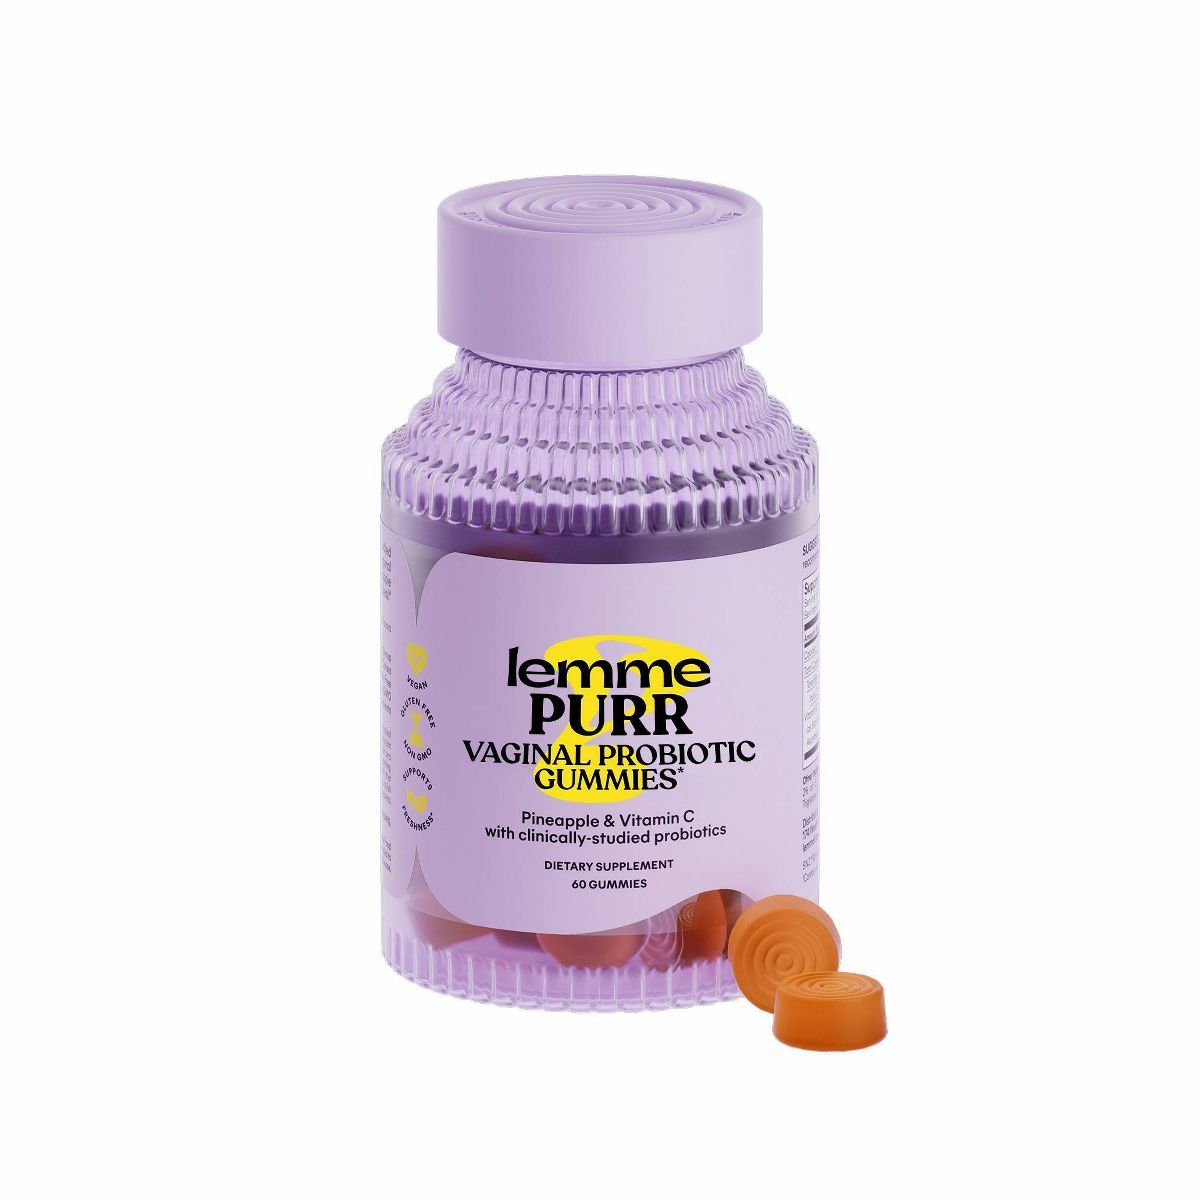 Lemme Purr Vaginal Probiotic Vegan Gummies - 60ct | Target